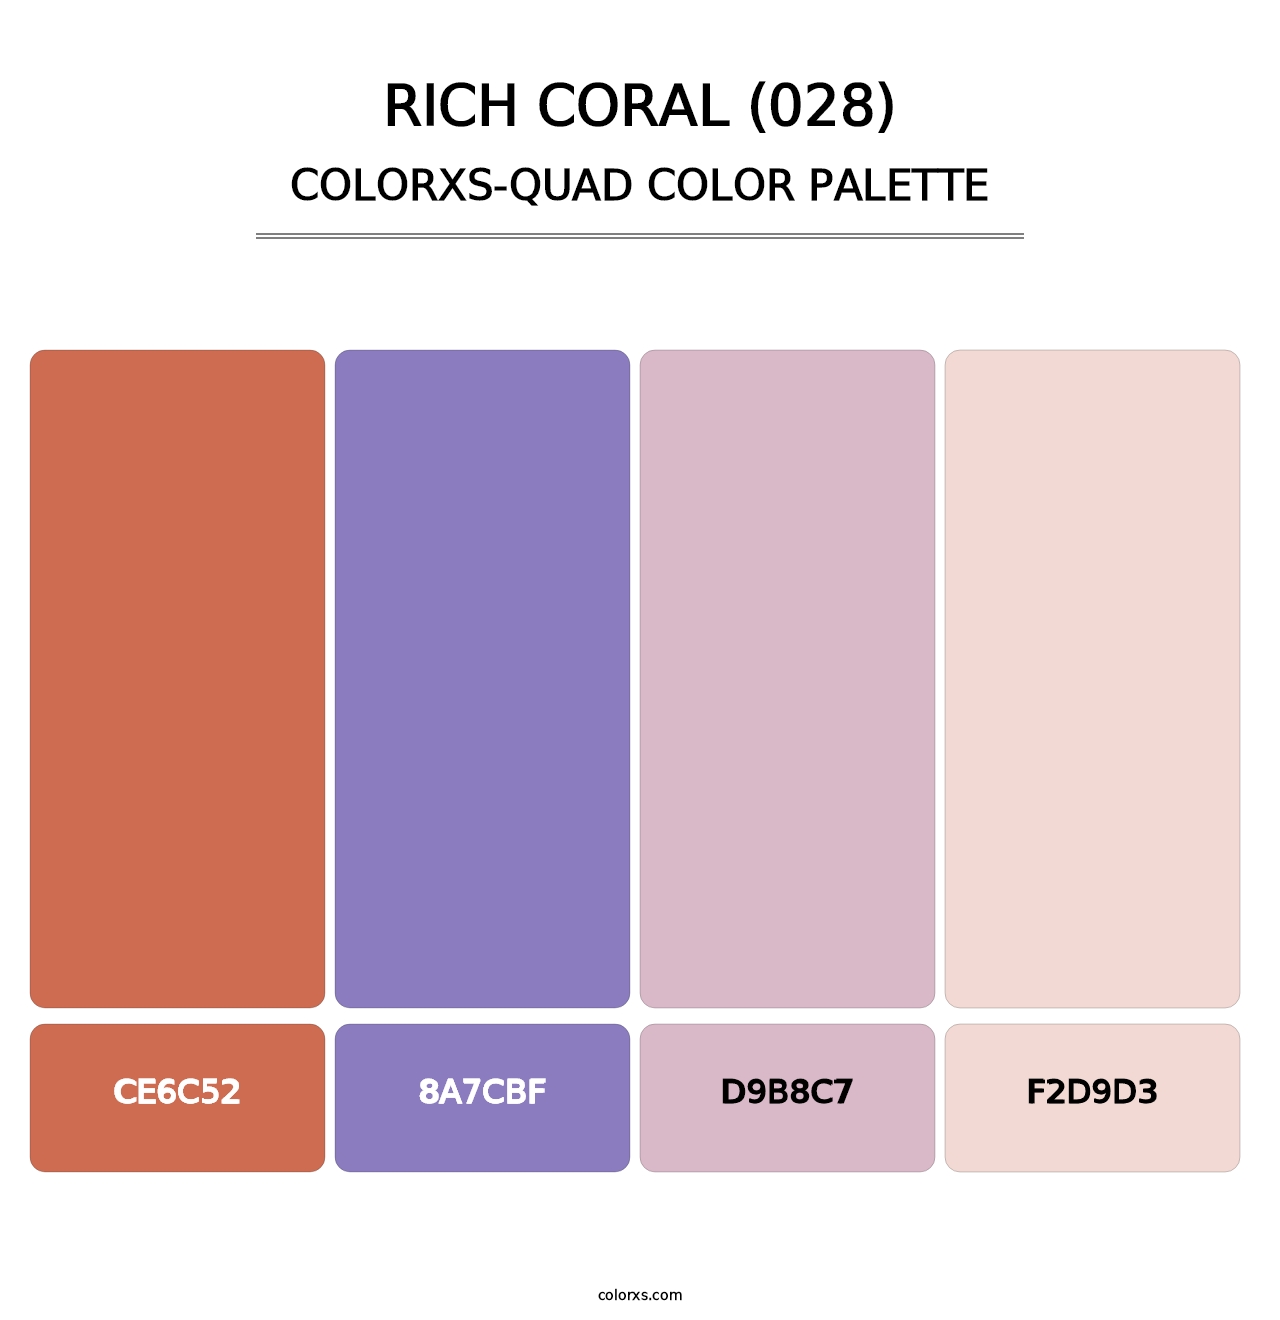 Rich Coral (028) - Colorxs Quad Palette